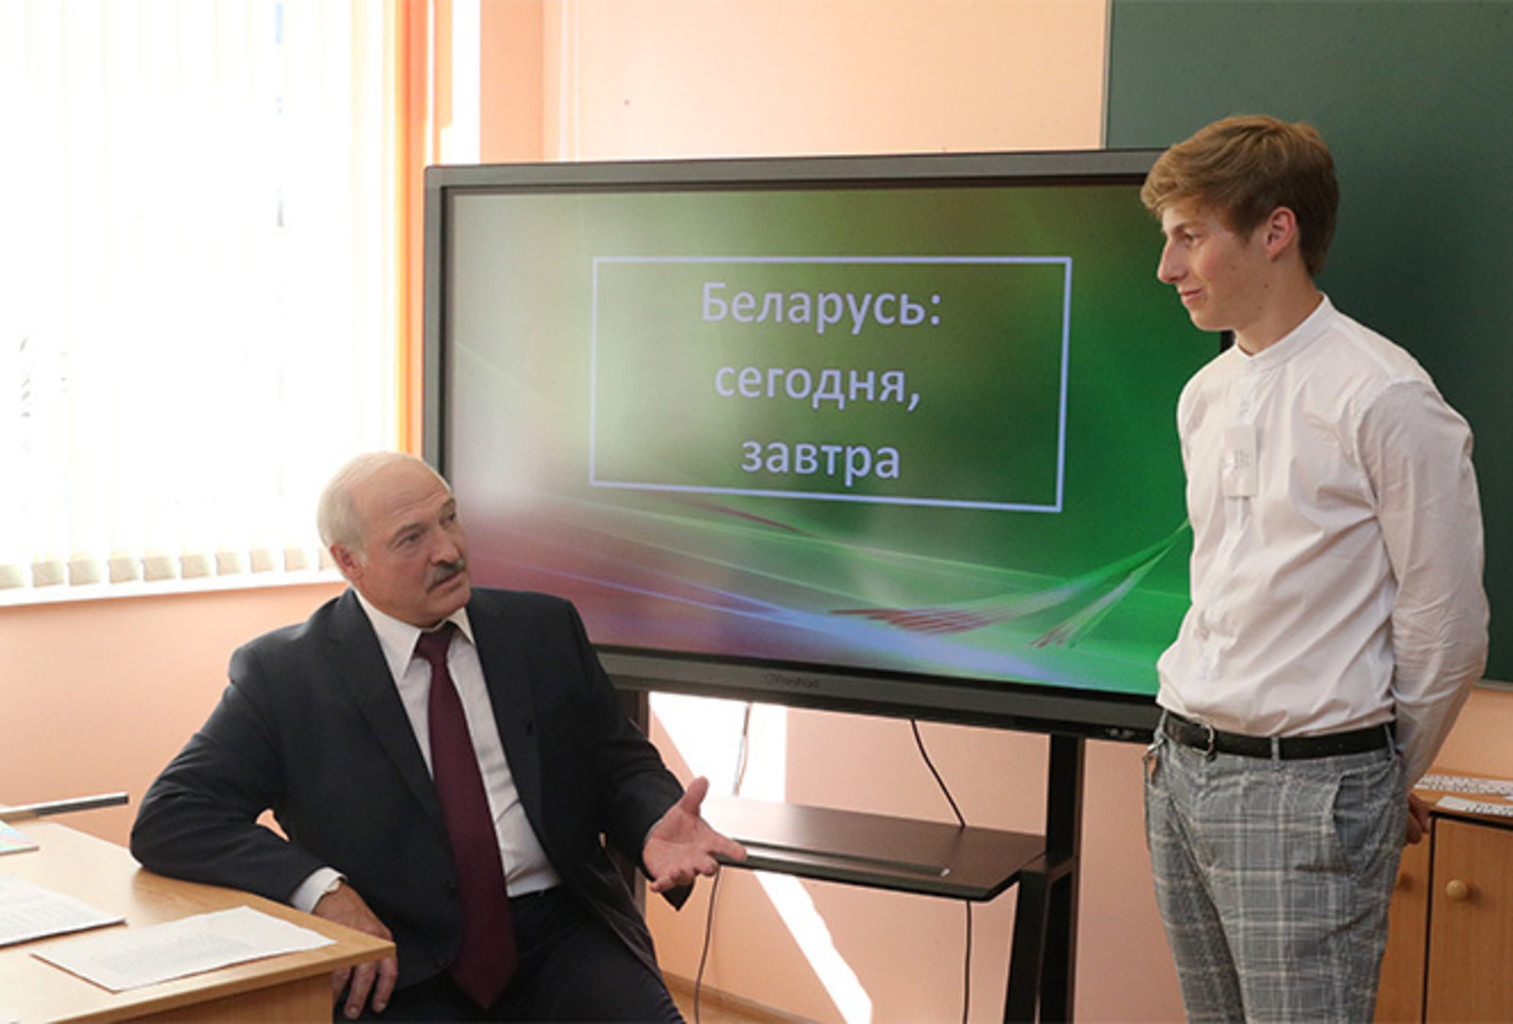 "Все испортил Зеленский", - Лукашенко рассказал о провальной "реформе"